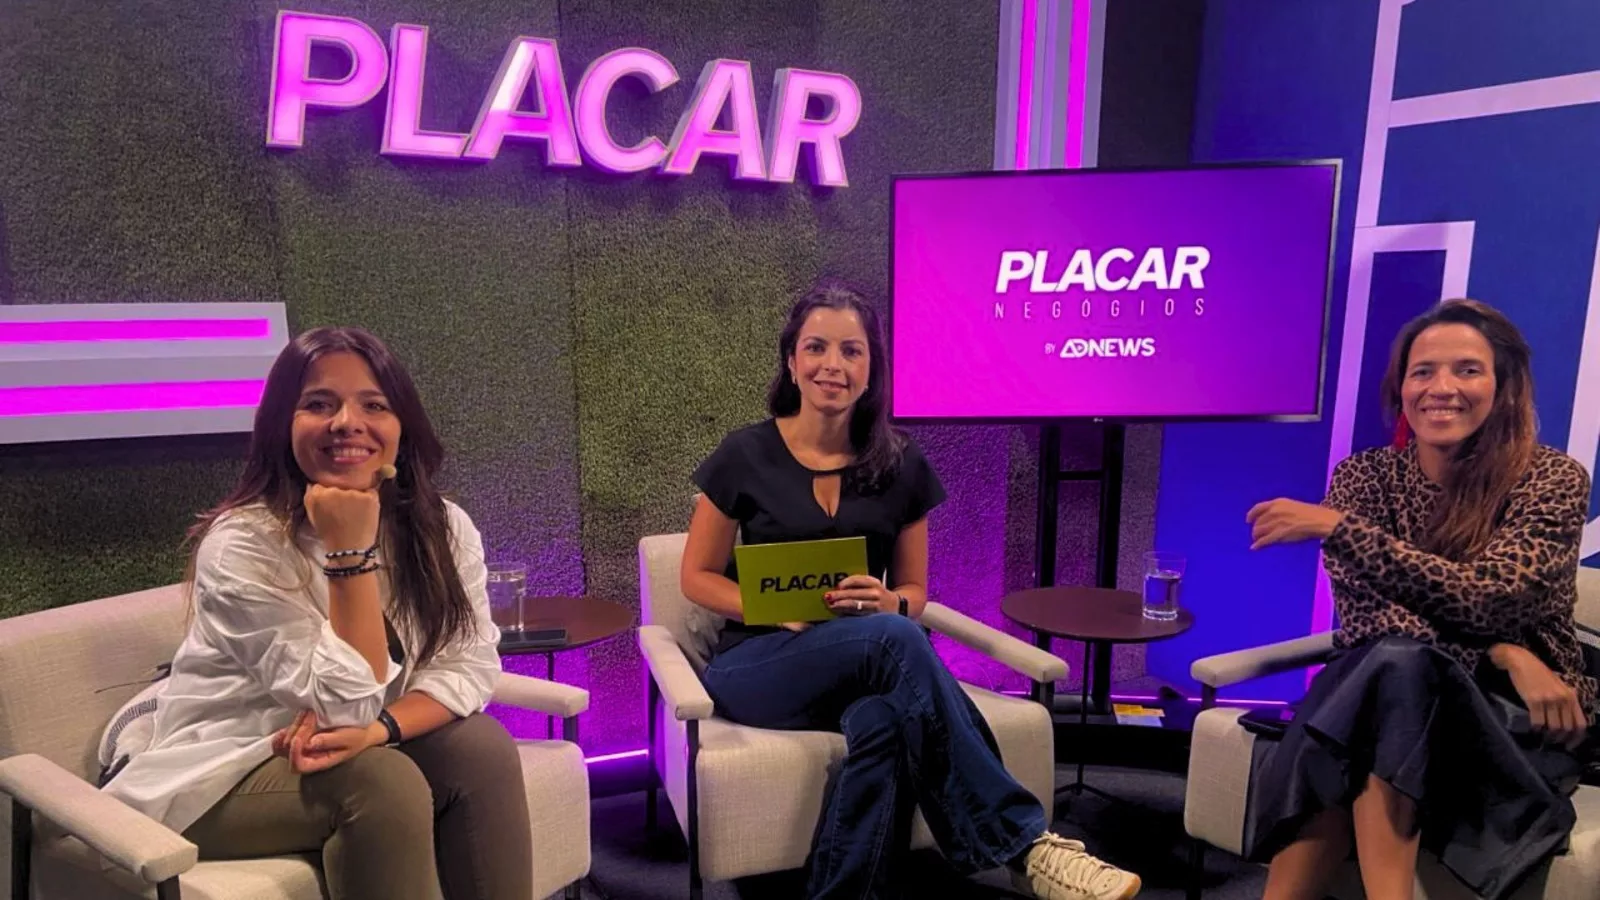 Luiza Maggessi, da NWB, revela estratégias de conteúdo e parcerias no PLACAR Negócios by Adnews